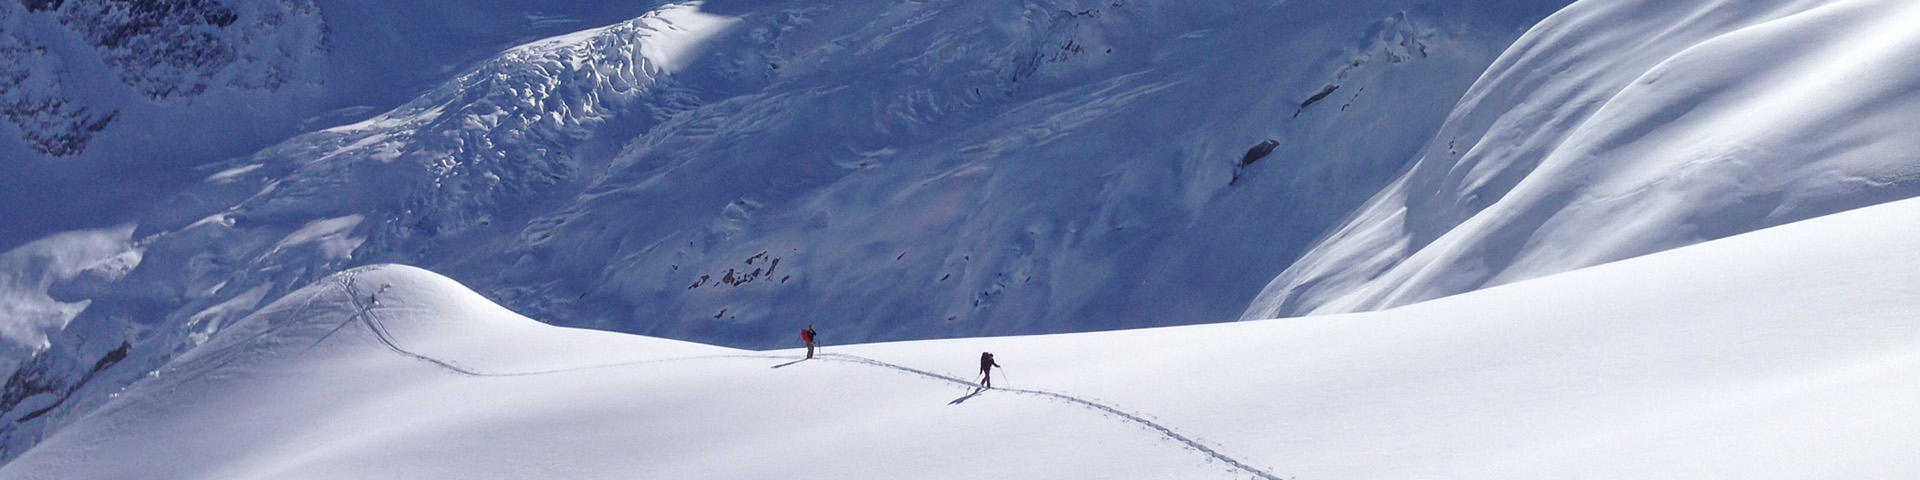 Deux skieurs en tournée dans des conditions enneigées